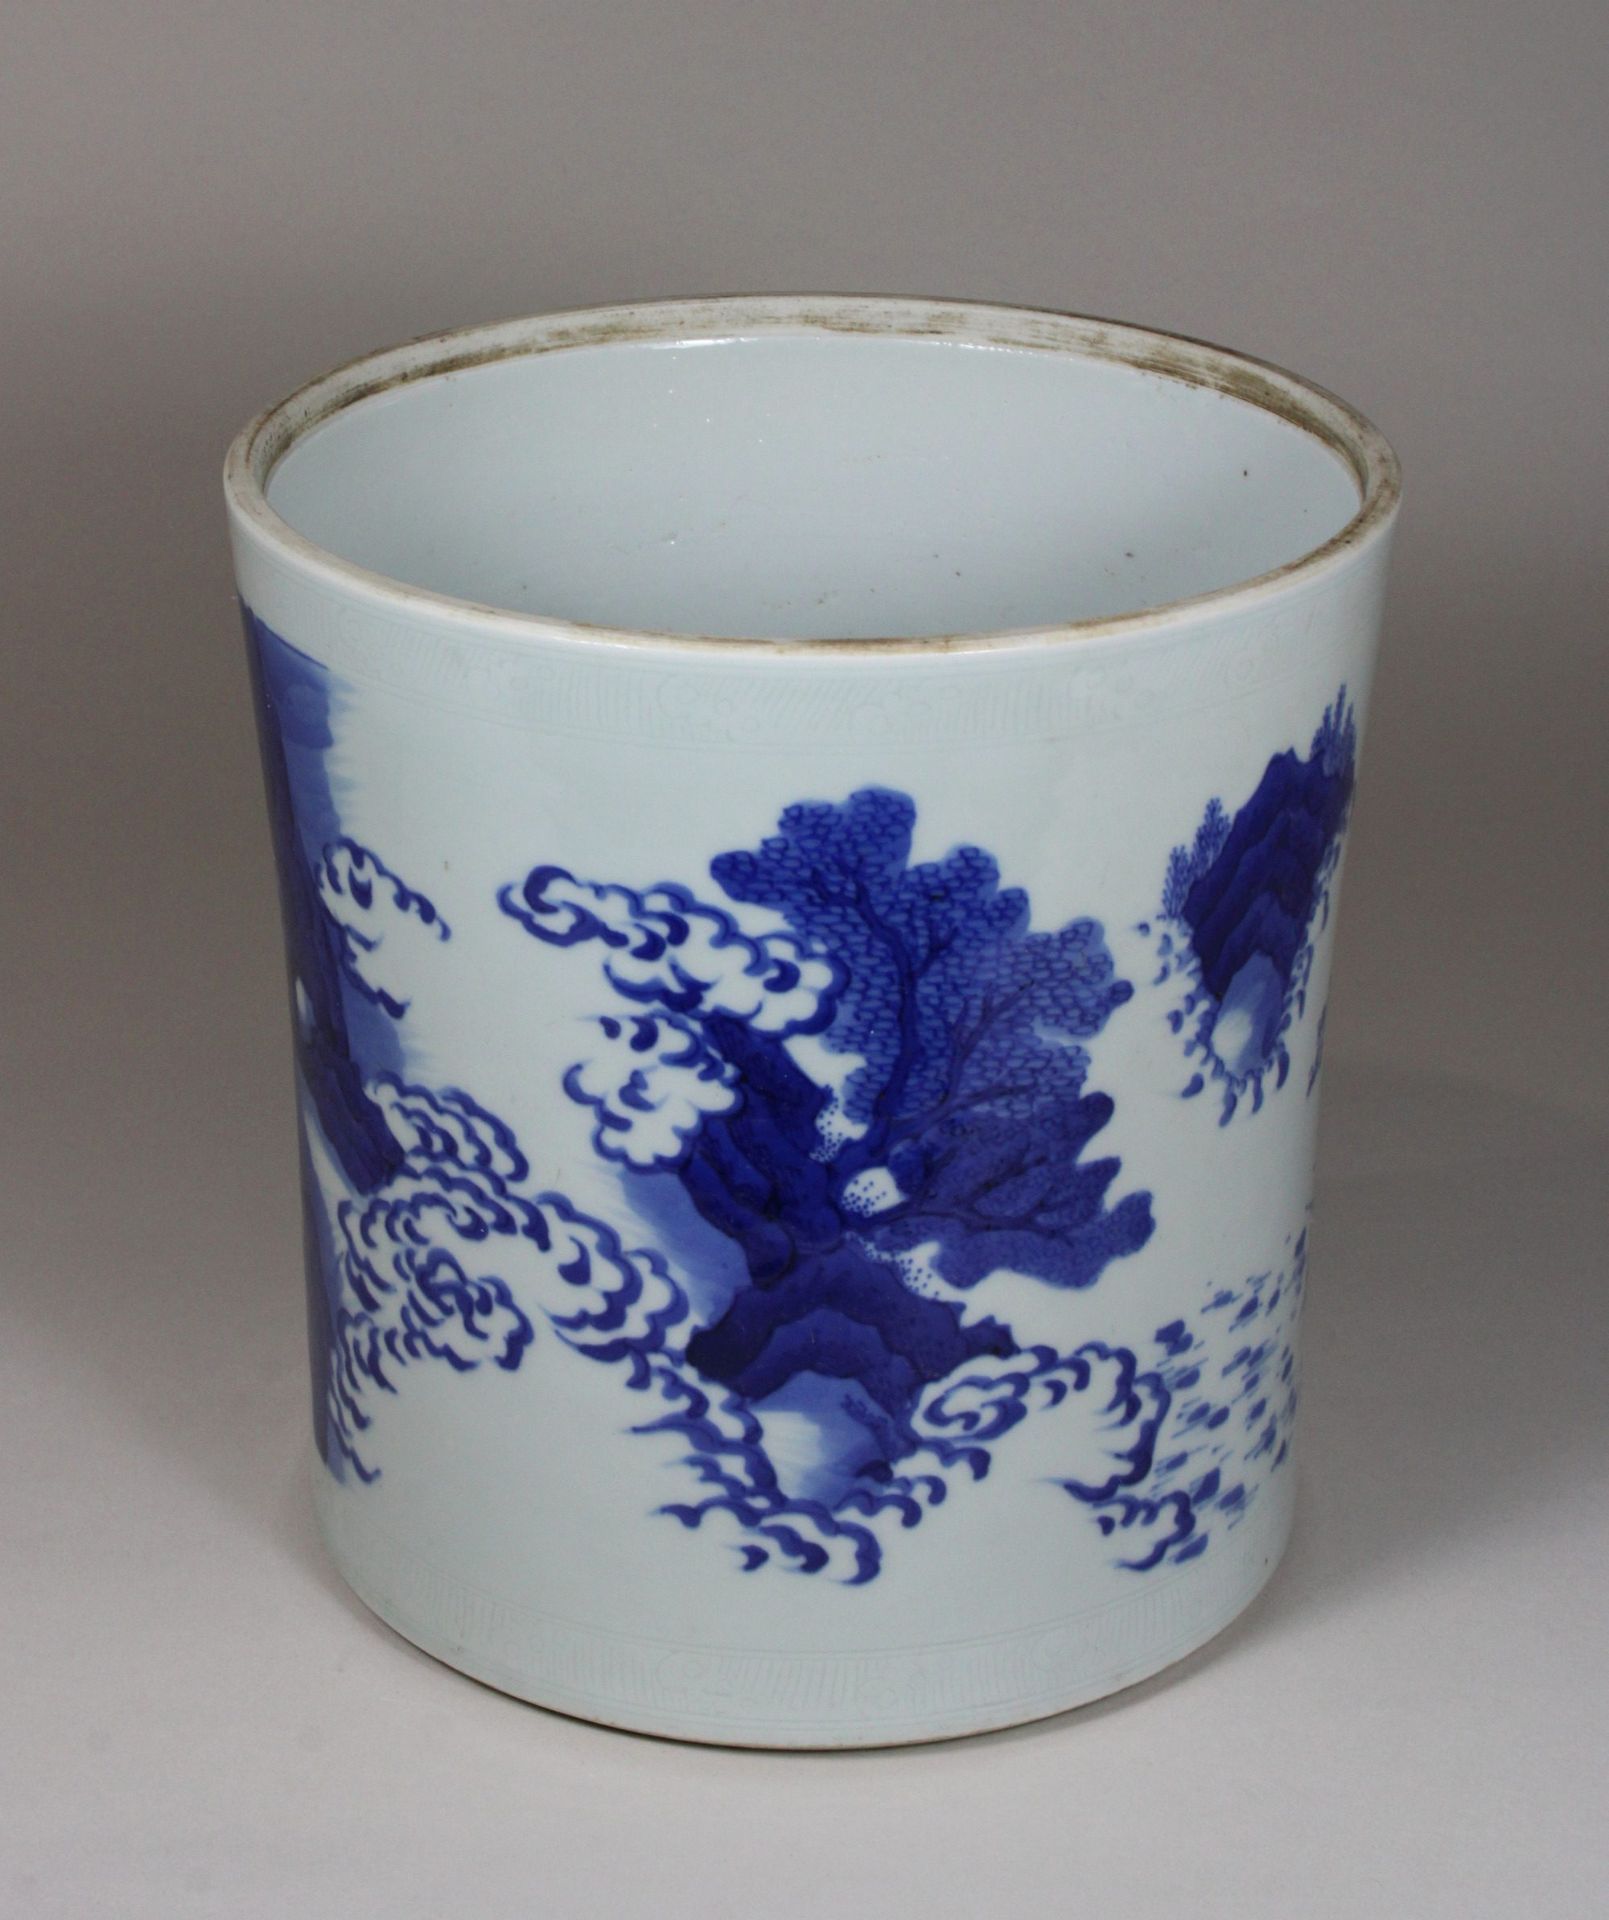 China, großer Pinselbecher, in Blau - Weiß, florale und figürliche Darstellung, Dm 21, H 22, - Image 2 of 4